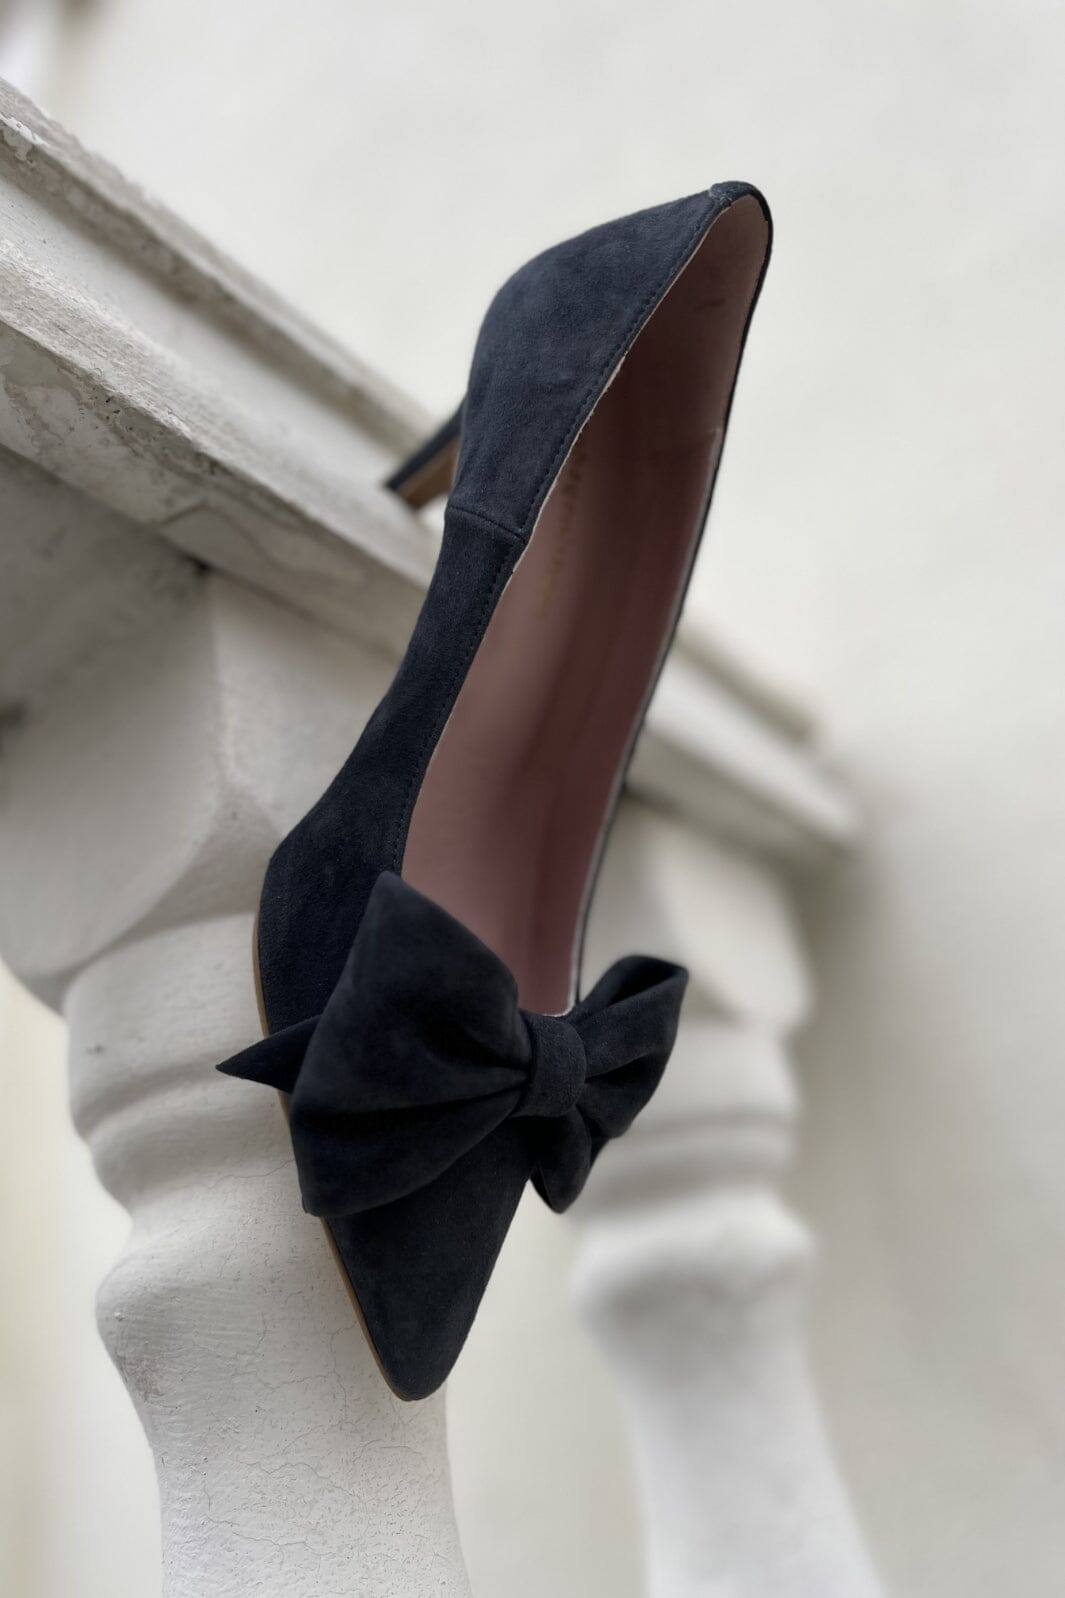 Copenhagen Shoes - New Maite - Black Stiletter 